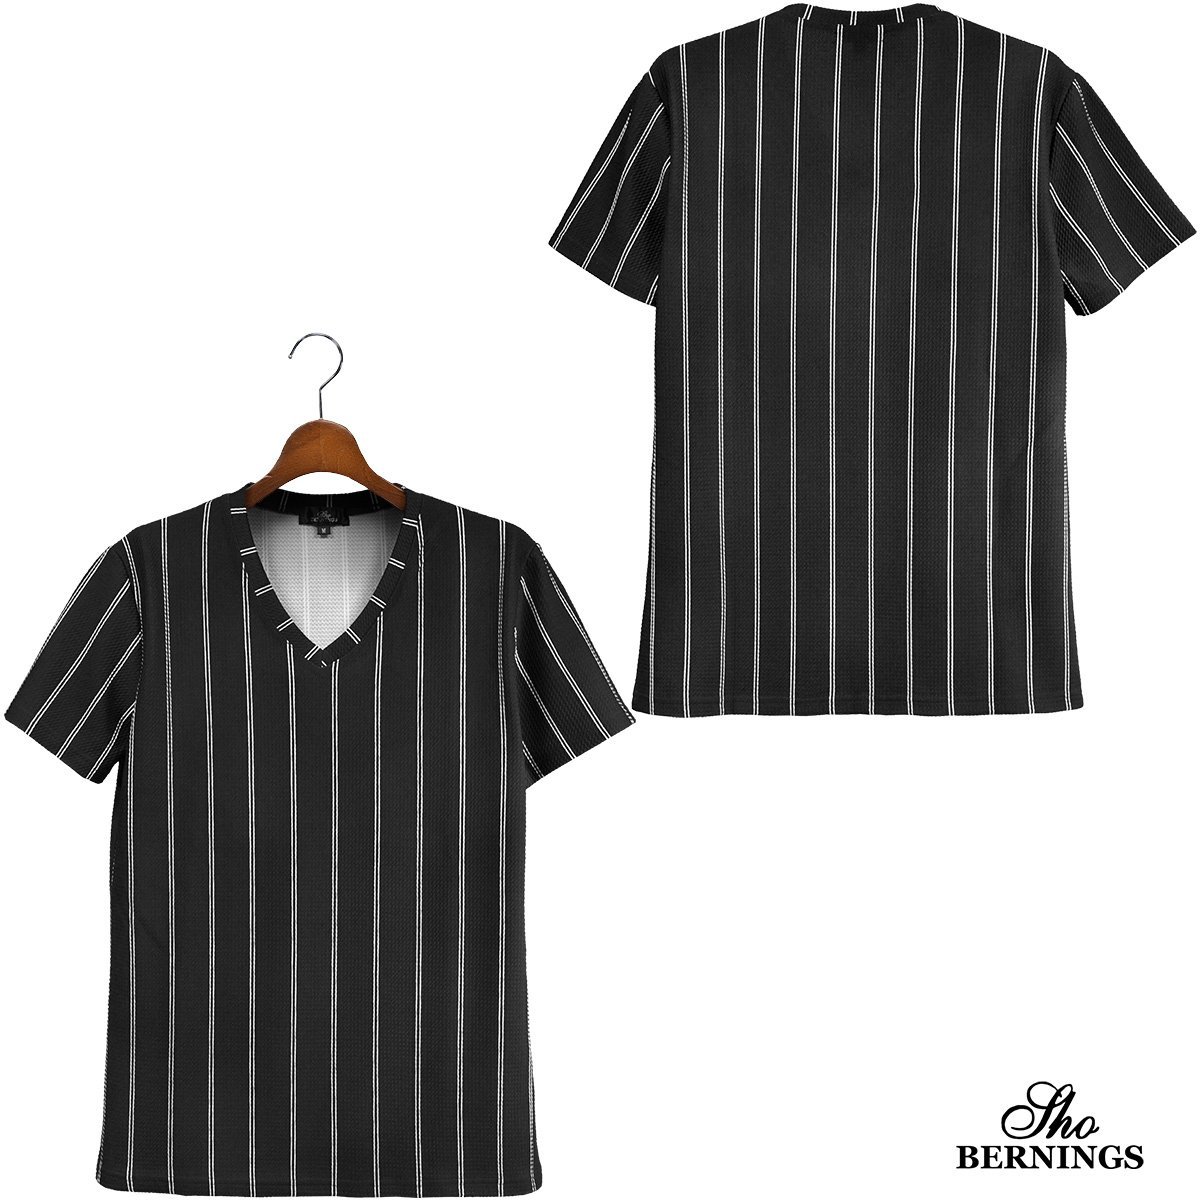 319032-90 Bernings sho Tシャツ Vネック ダブルストライプ シンプル 半袖 mens メンズ(ブラック黒) きれいめ カジュアル XL_画像4